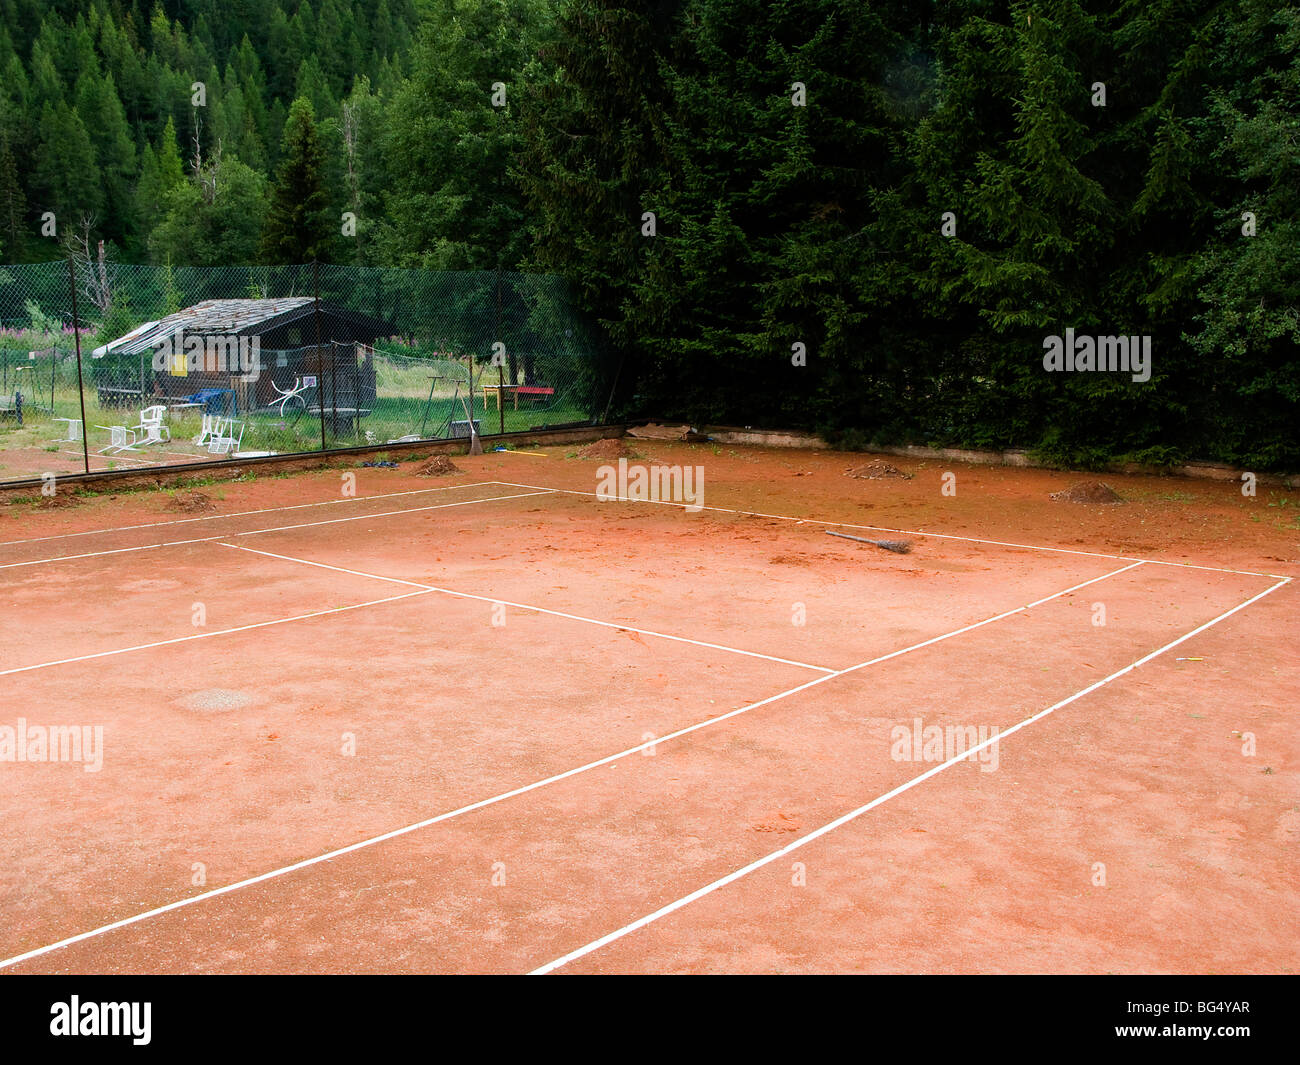 Abandon tennis vieux abandonnés négligé ligne interrompue lignes terre rouge les mauvaises herbes sports Val D'Aoste Italie Alpes Ayas Banque D'Images